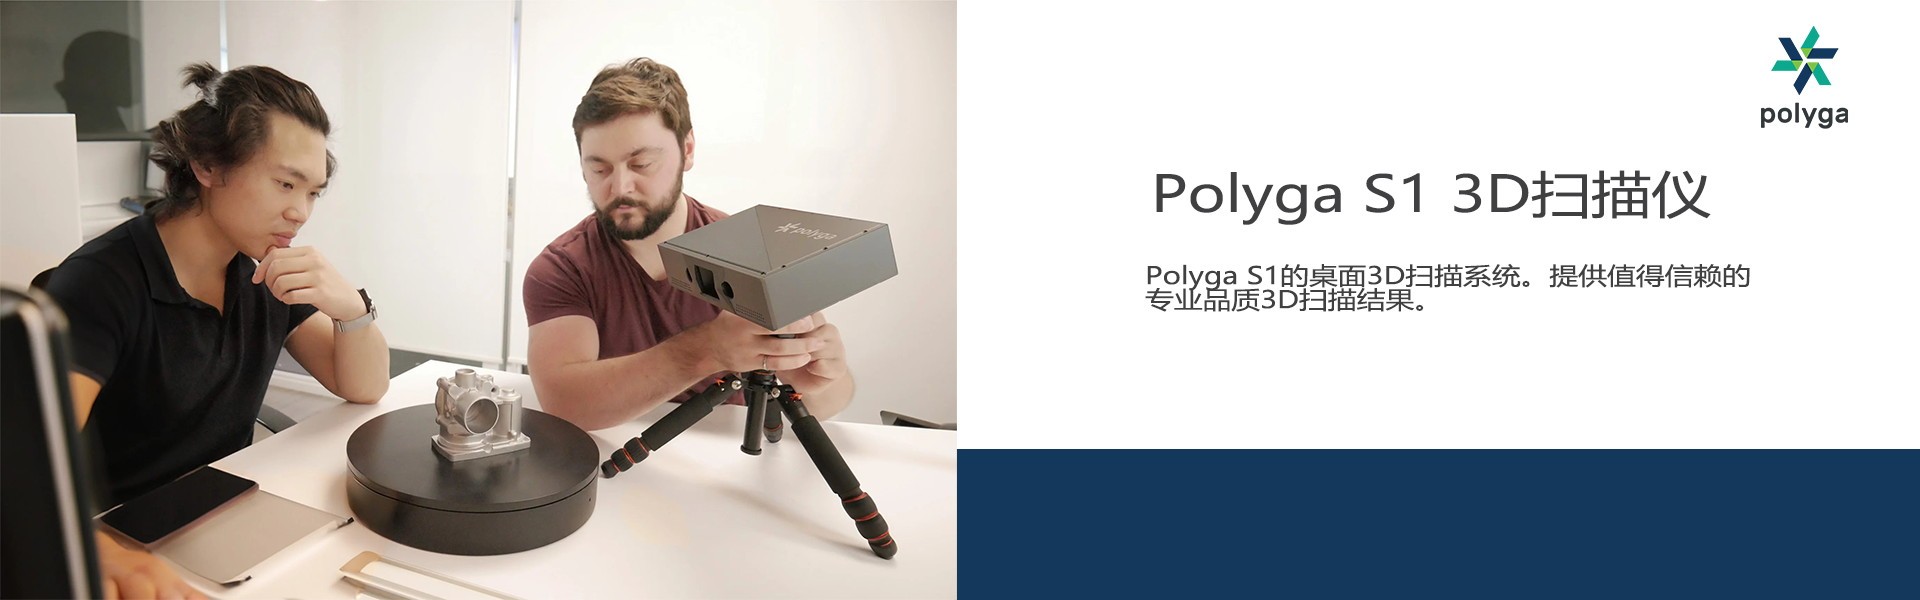 Polyga S1 Pro 3D扫描仪